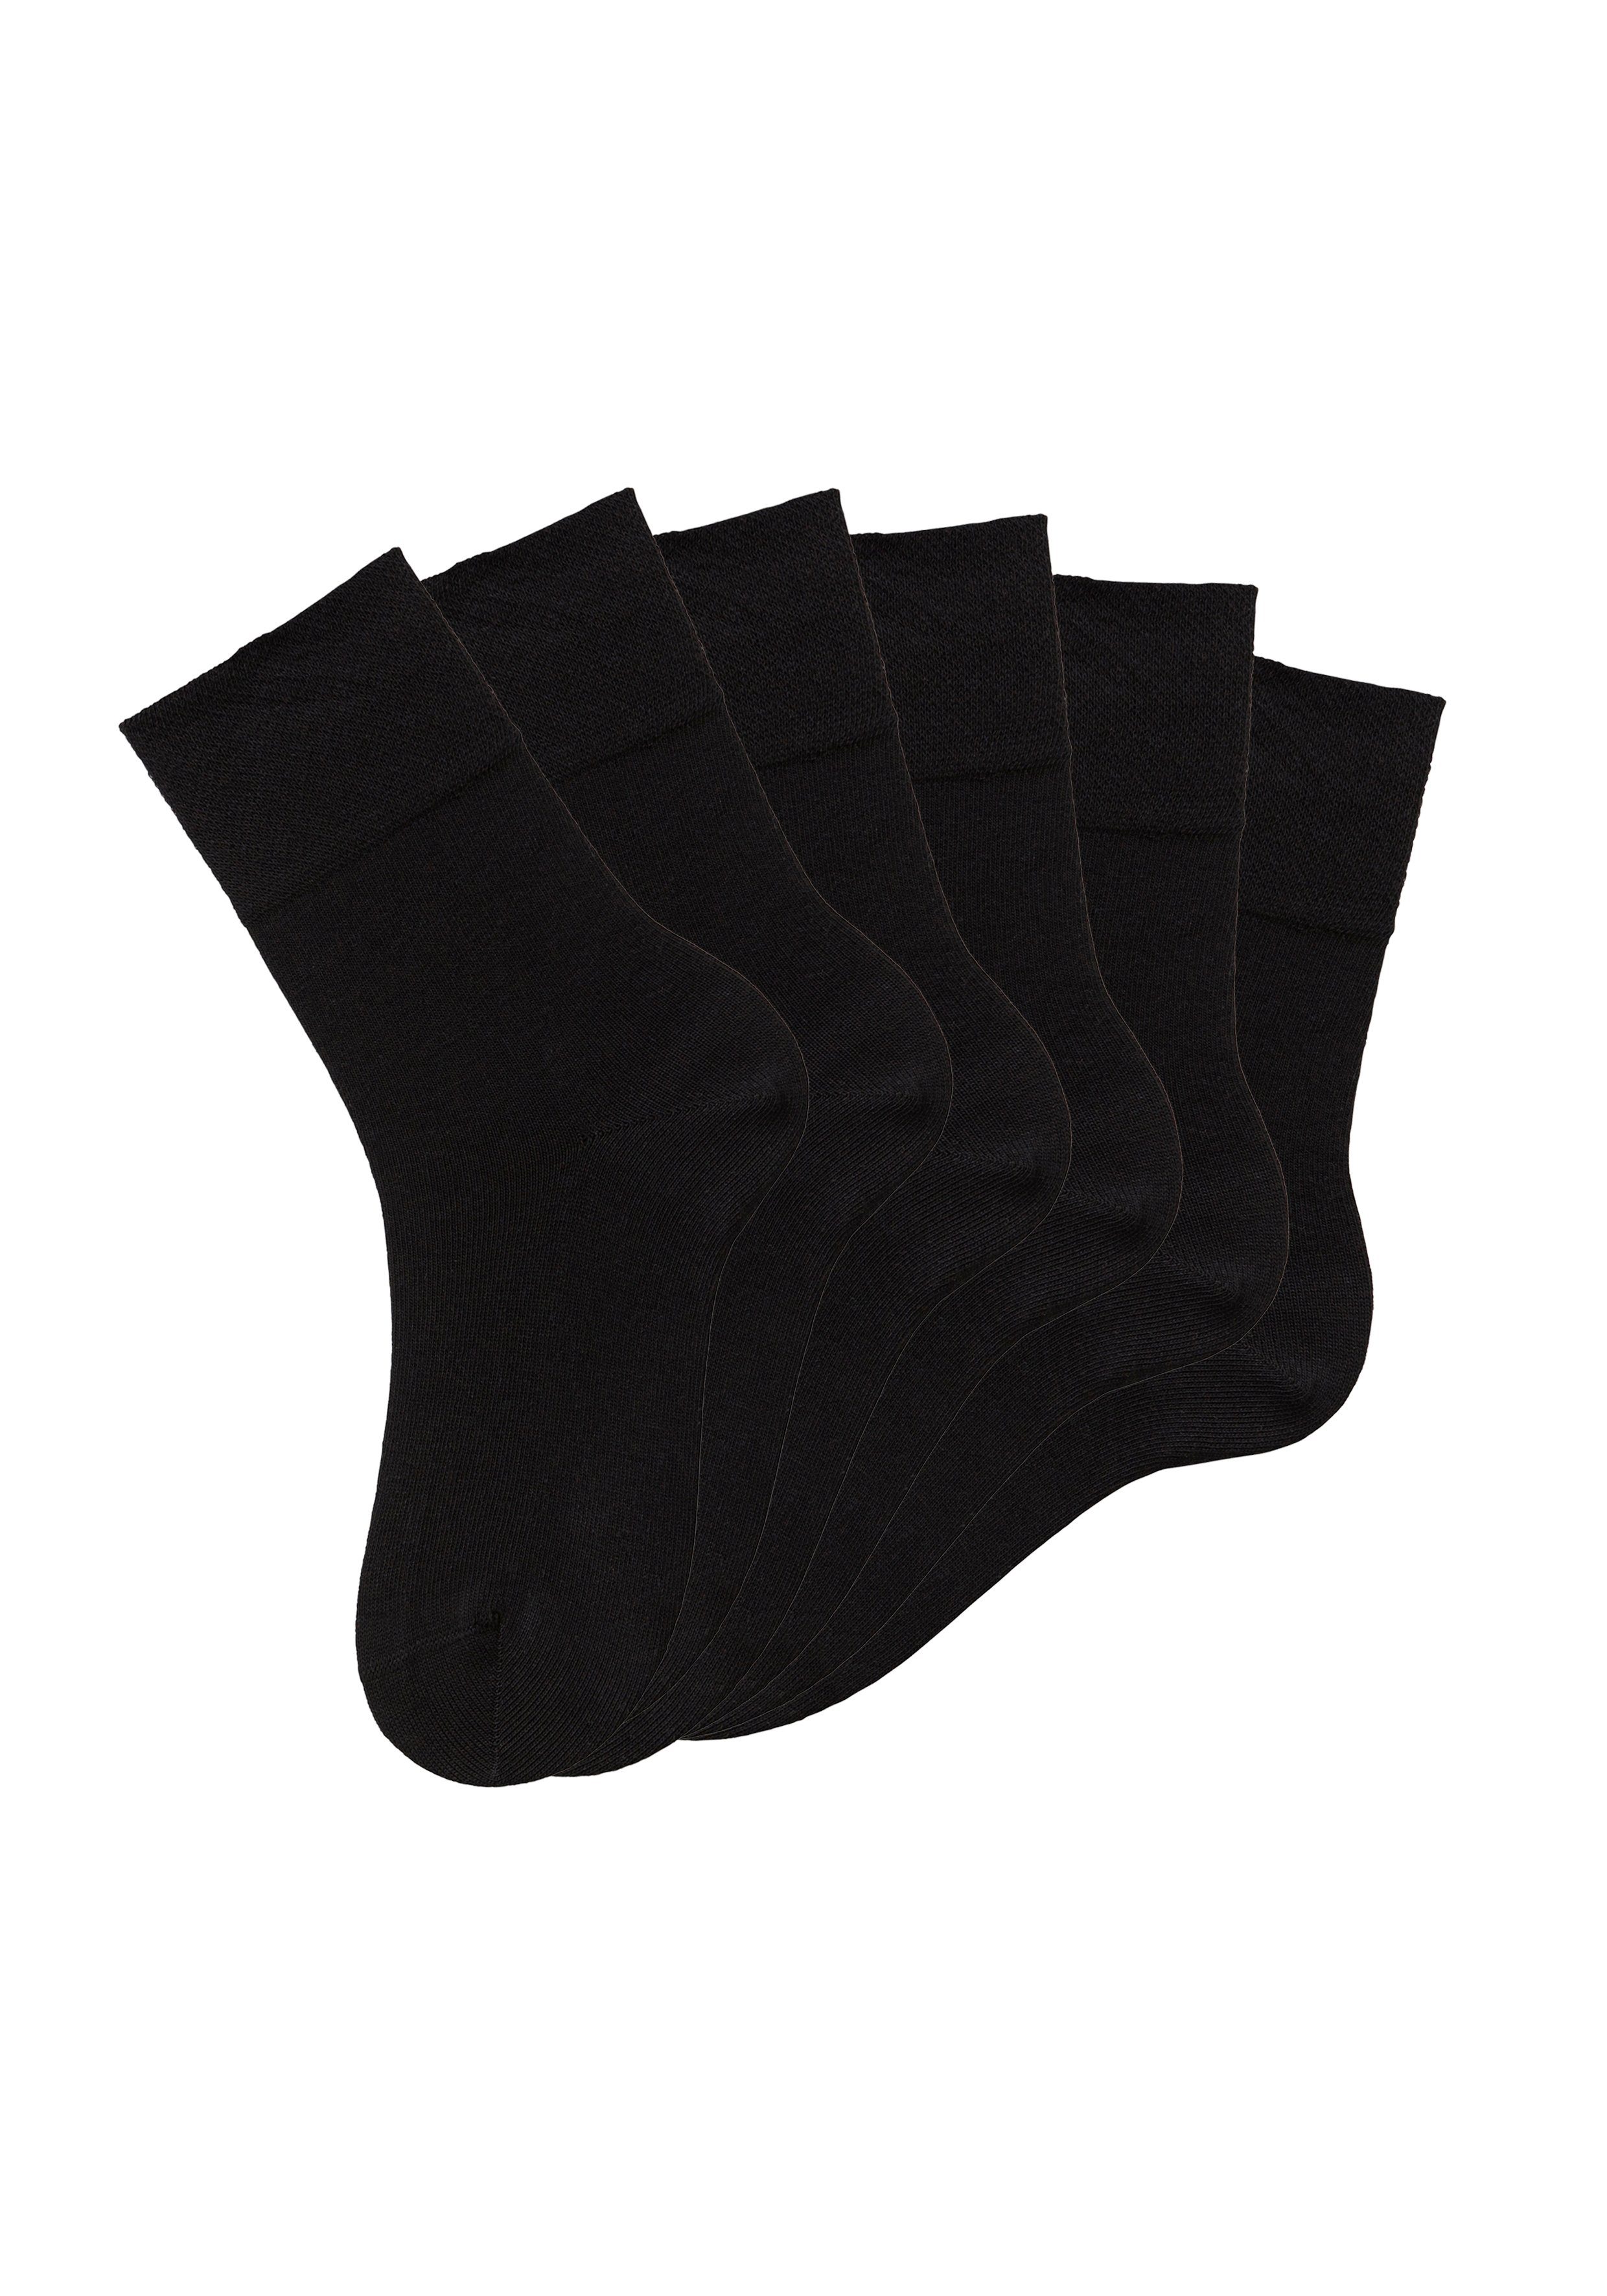 Socken Diabetiker 6x für schwarz (Set, auch geeignet H.I.S mit 6-Paar) Komfortbund